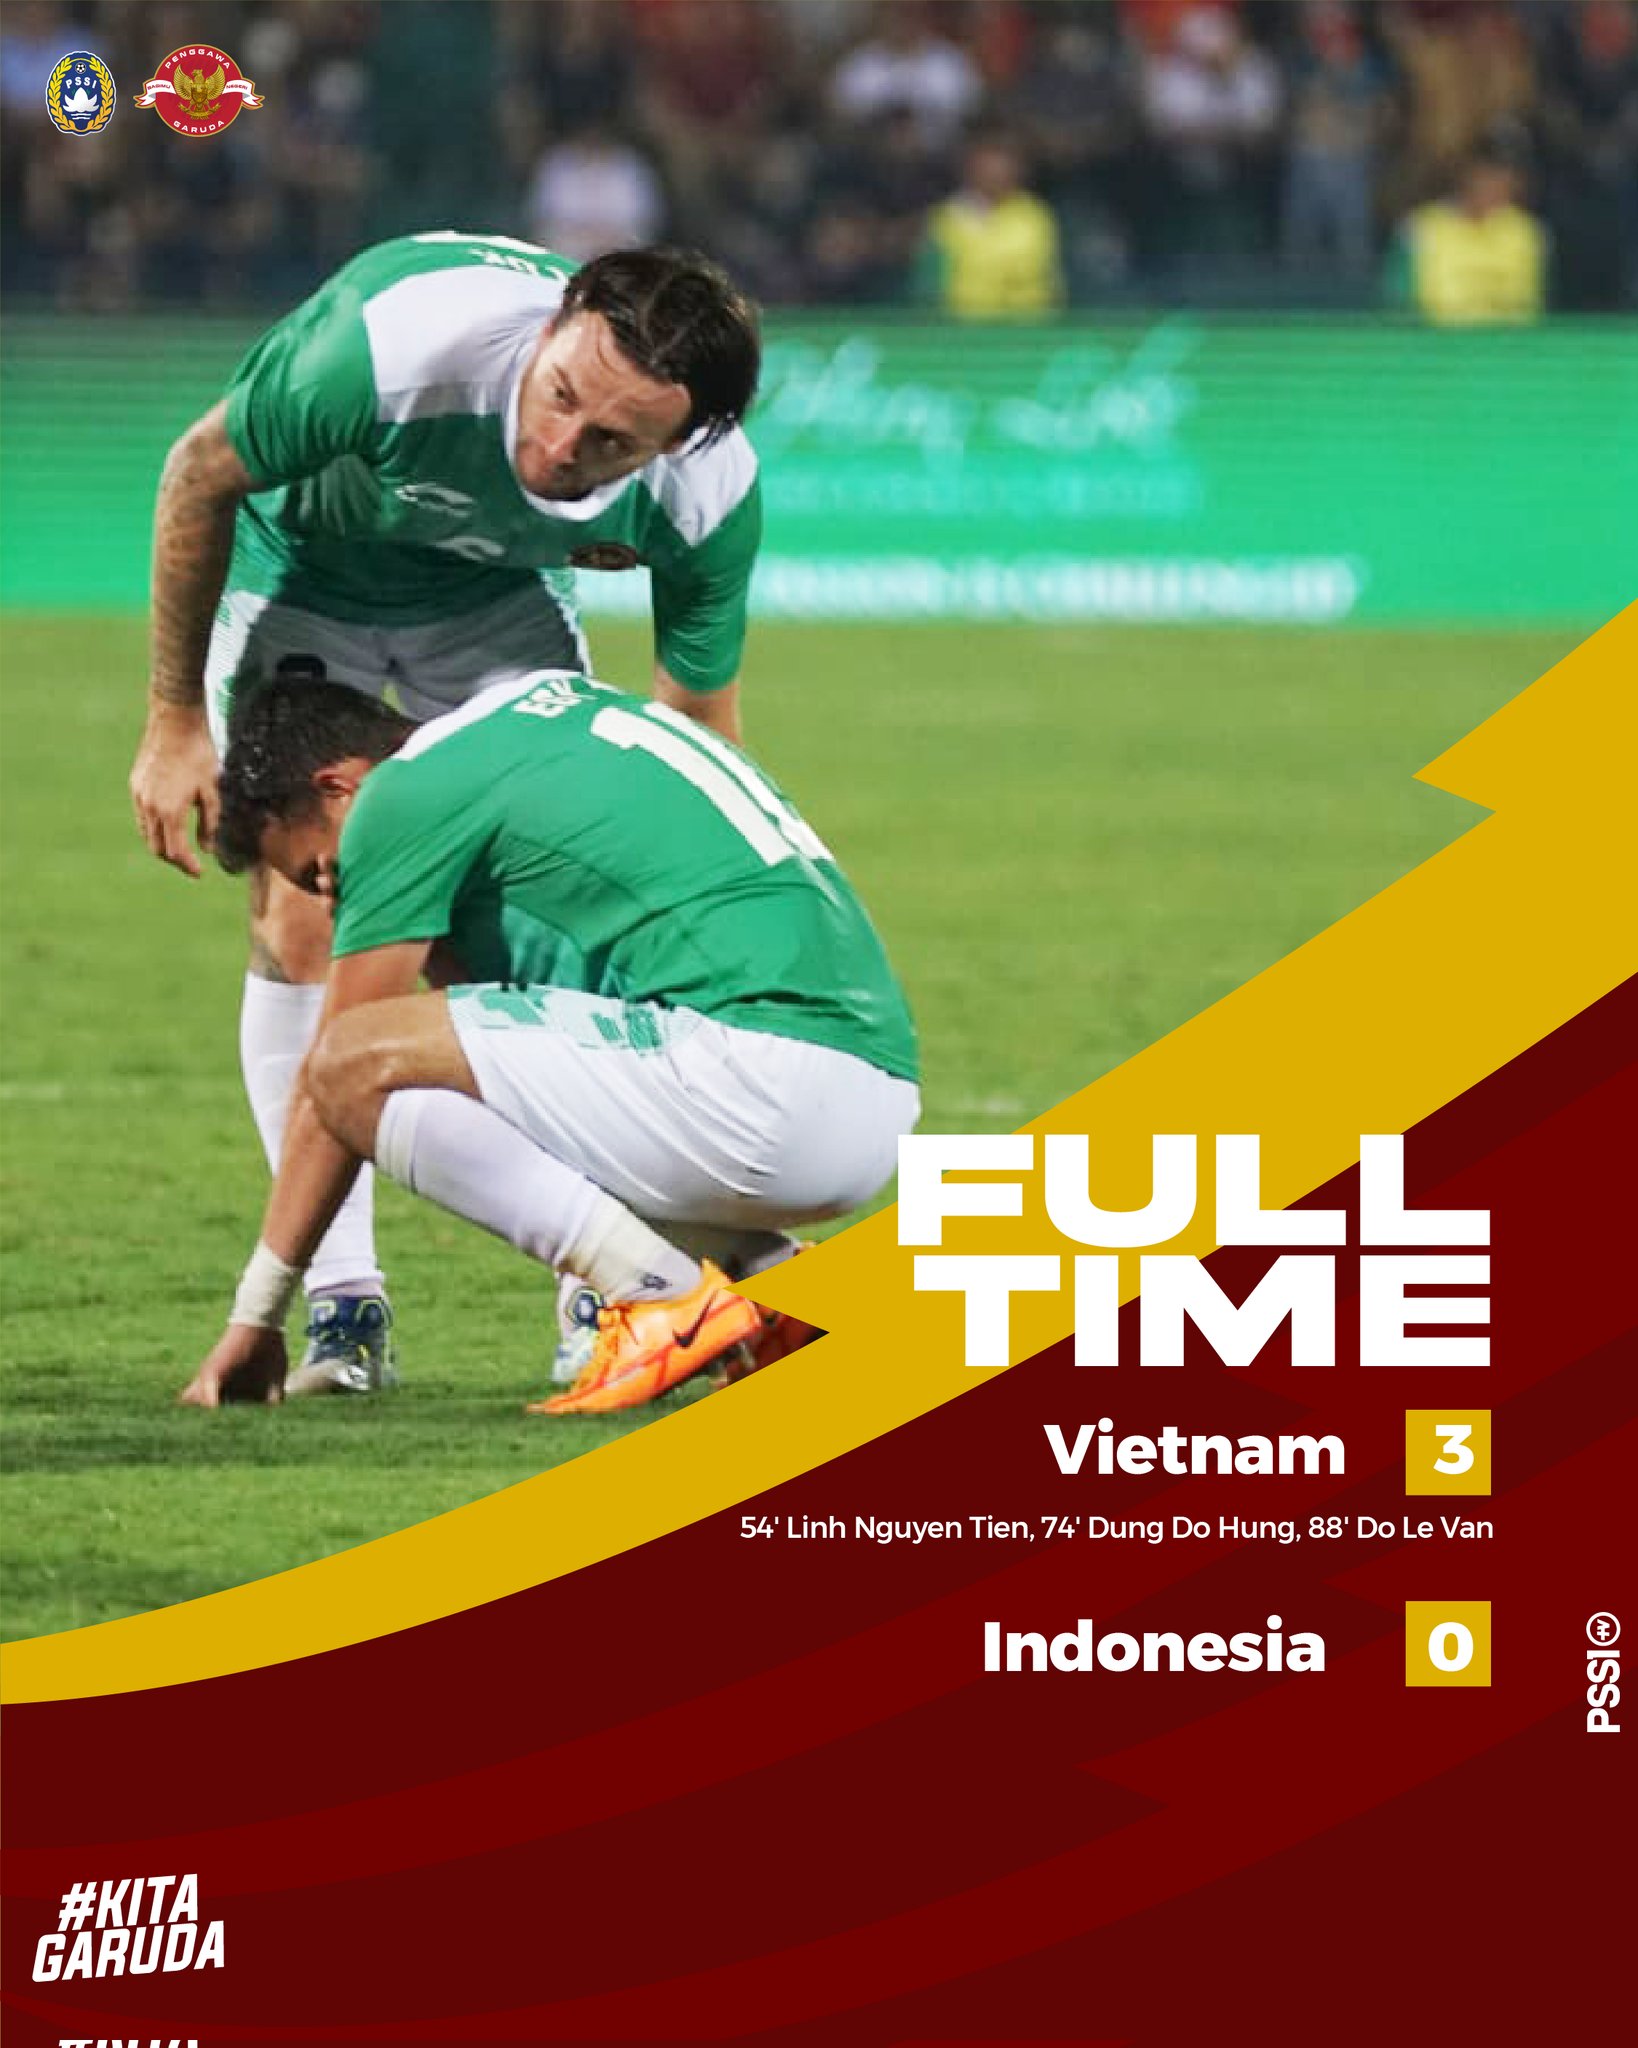 Vietnam 3 vs Indonesia 0: Strategi Shin Tae-Yong Amburadul di Babak Kedua